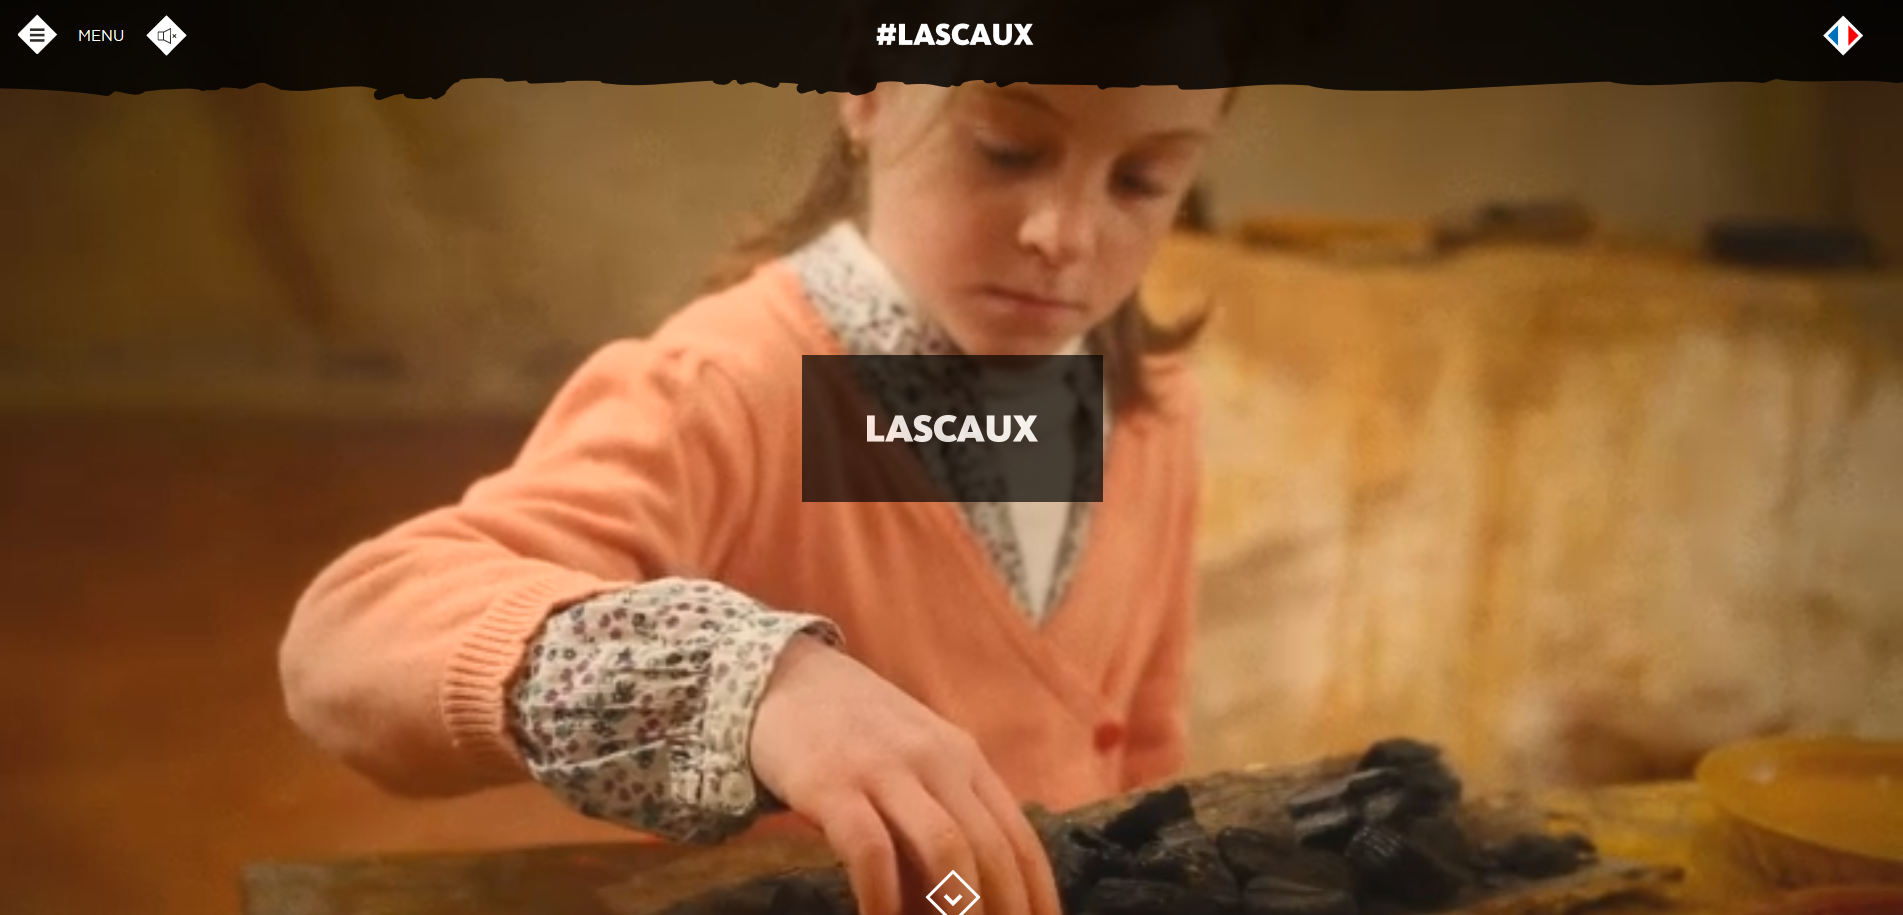 FireShot Screen Capture #228 - 'Lascaux' - www_lascaux_fr_fr